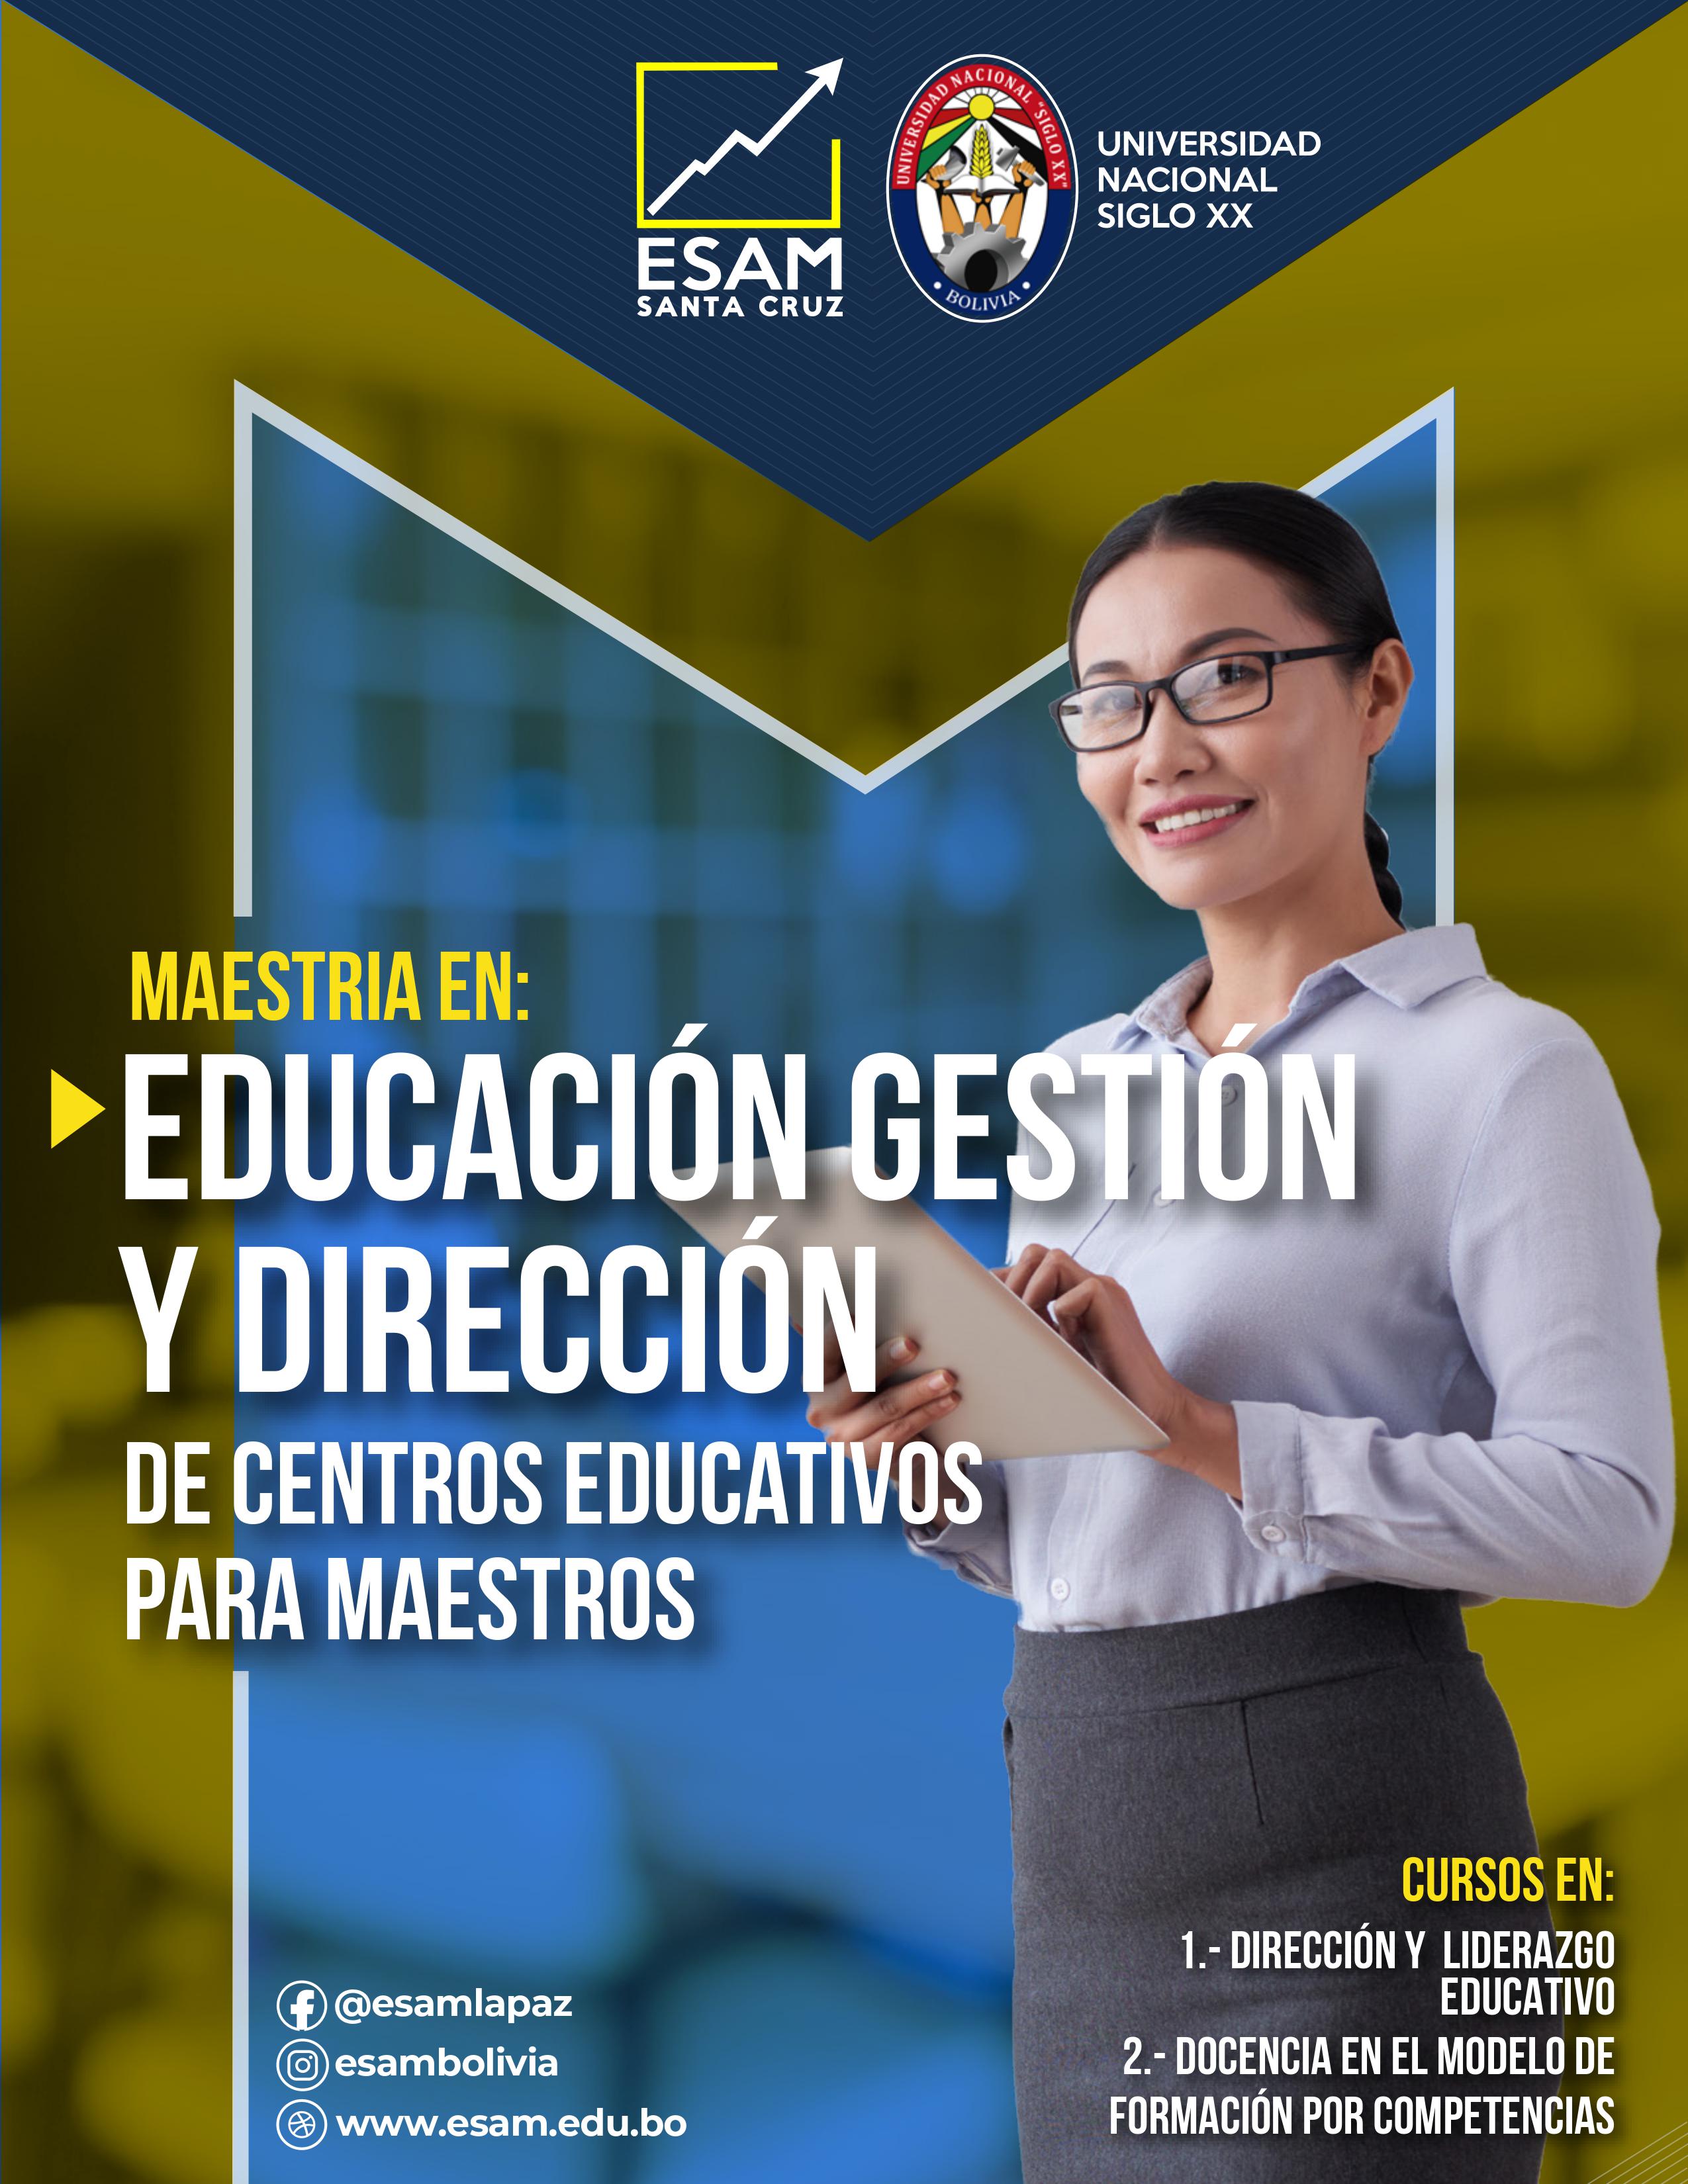 Maestría Educación, Gestión Y Dirección De Centros Educativos Para Maestros